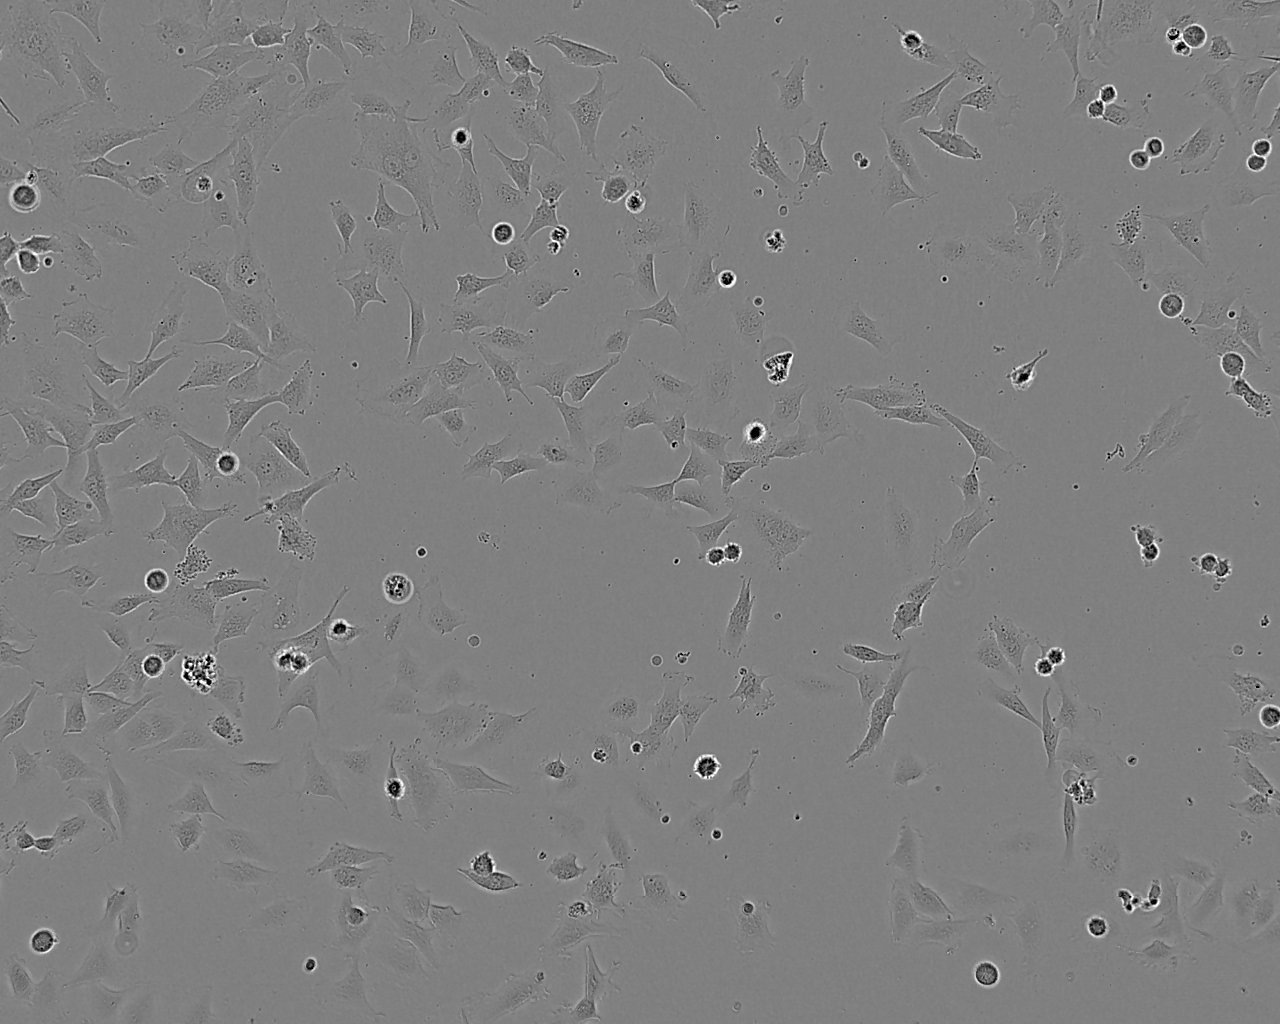 SNU-5 Cell|人胃癌细胞